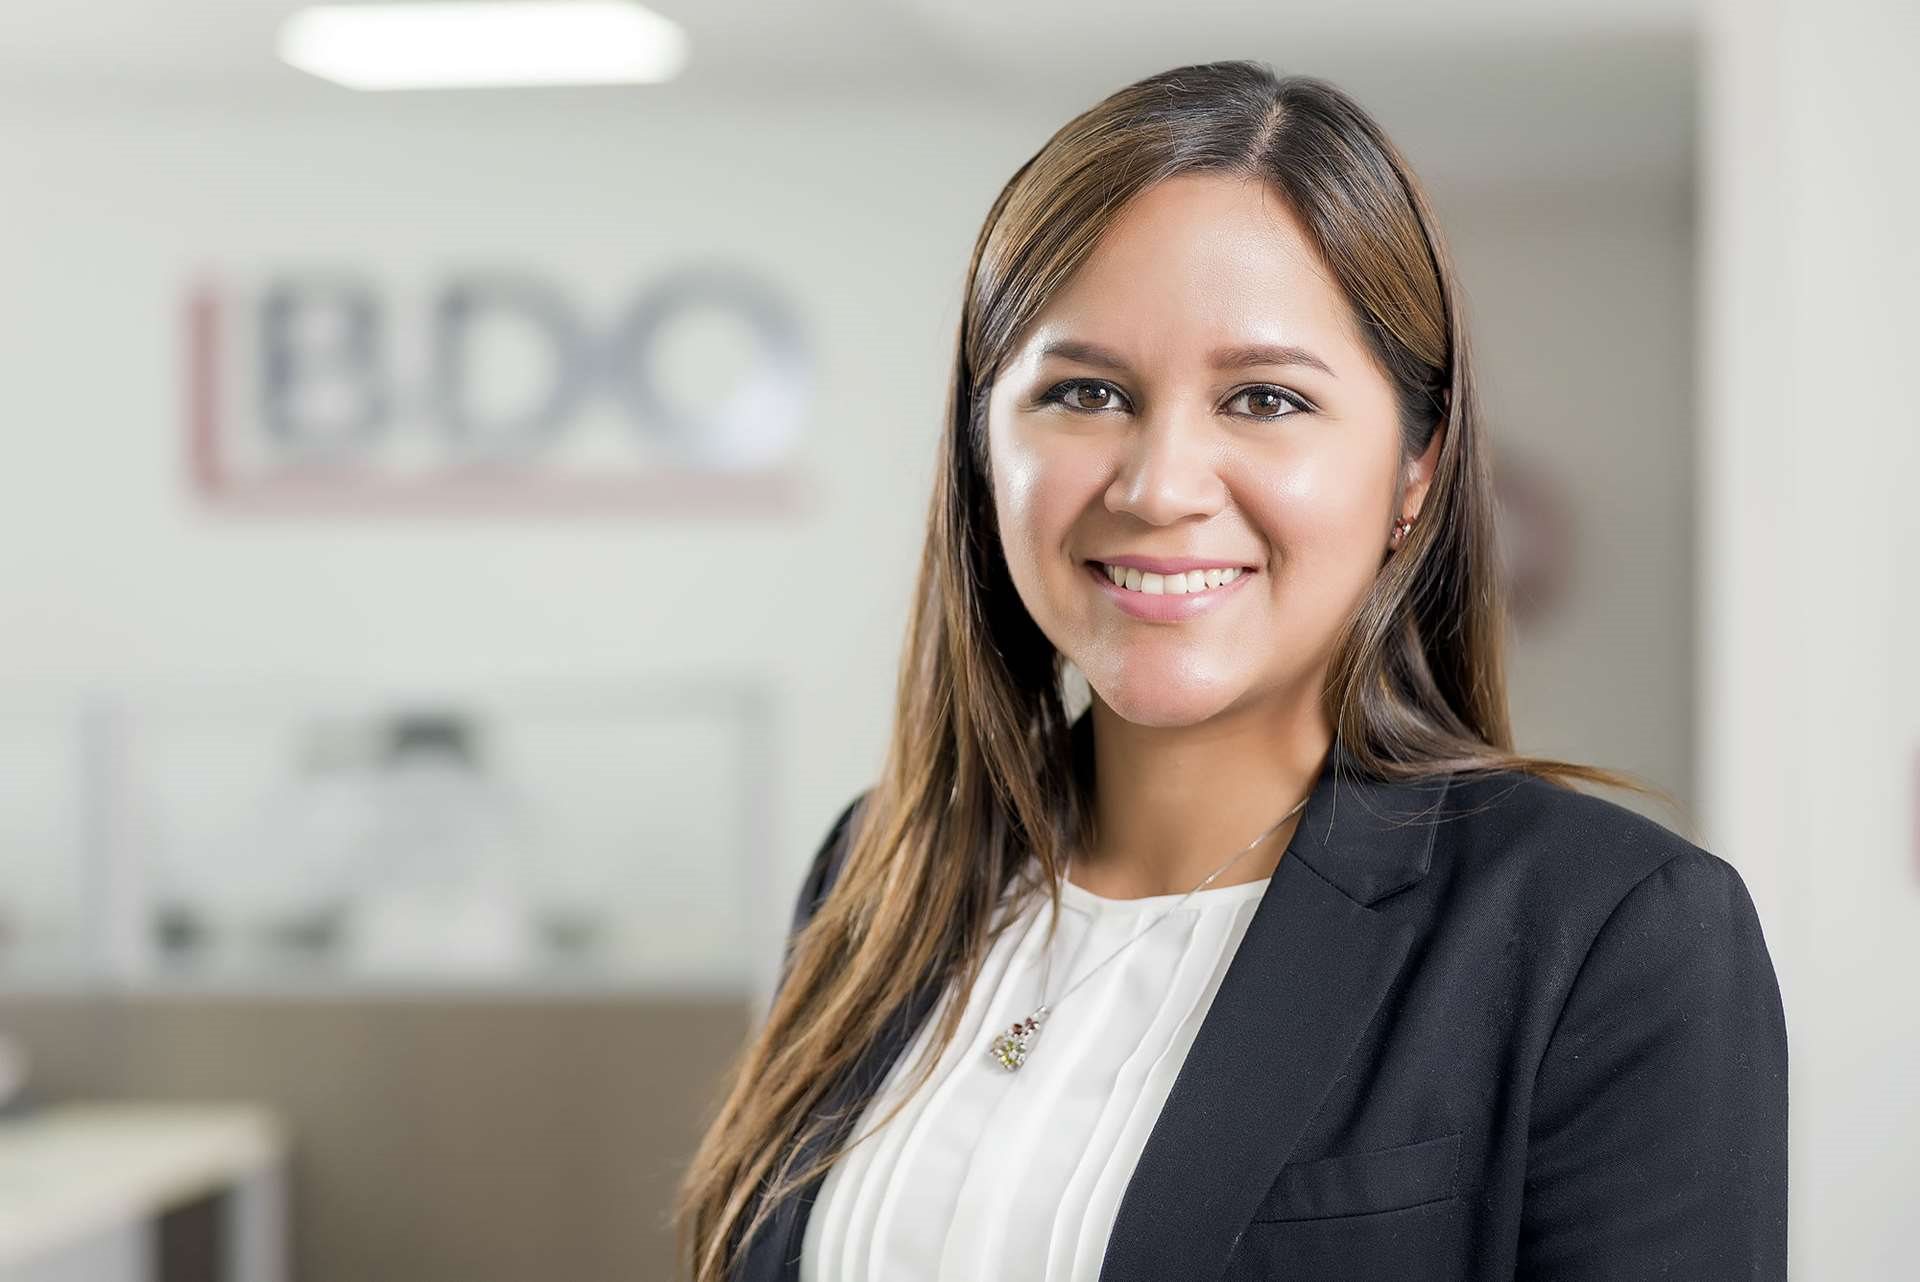 Érika Falquez, BDO Ecuador, Manager